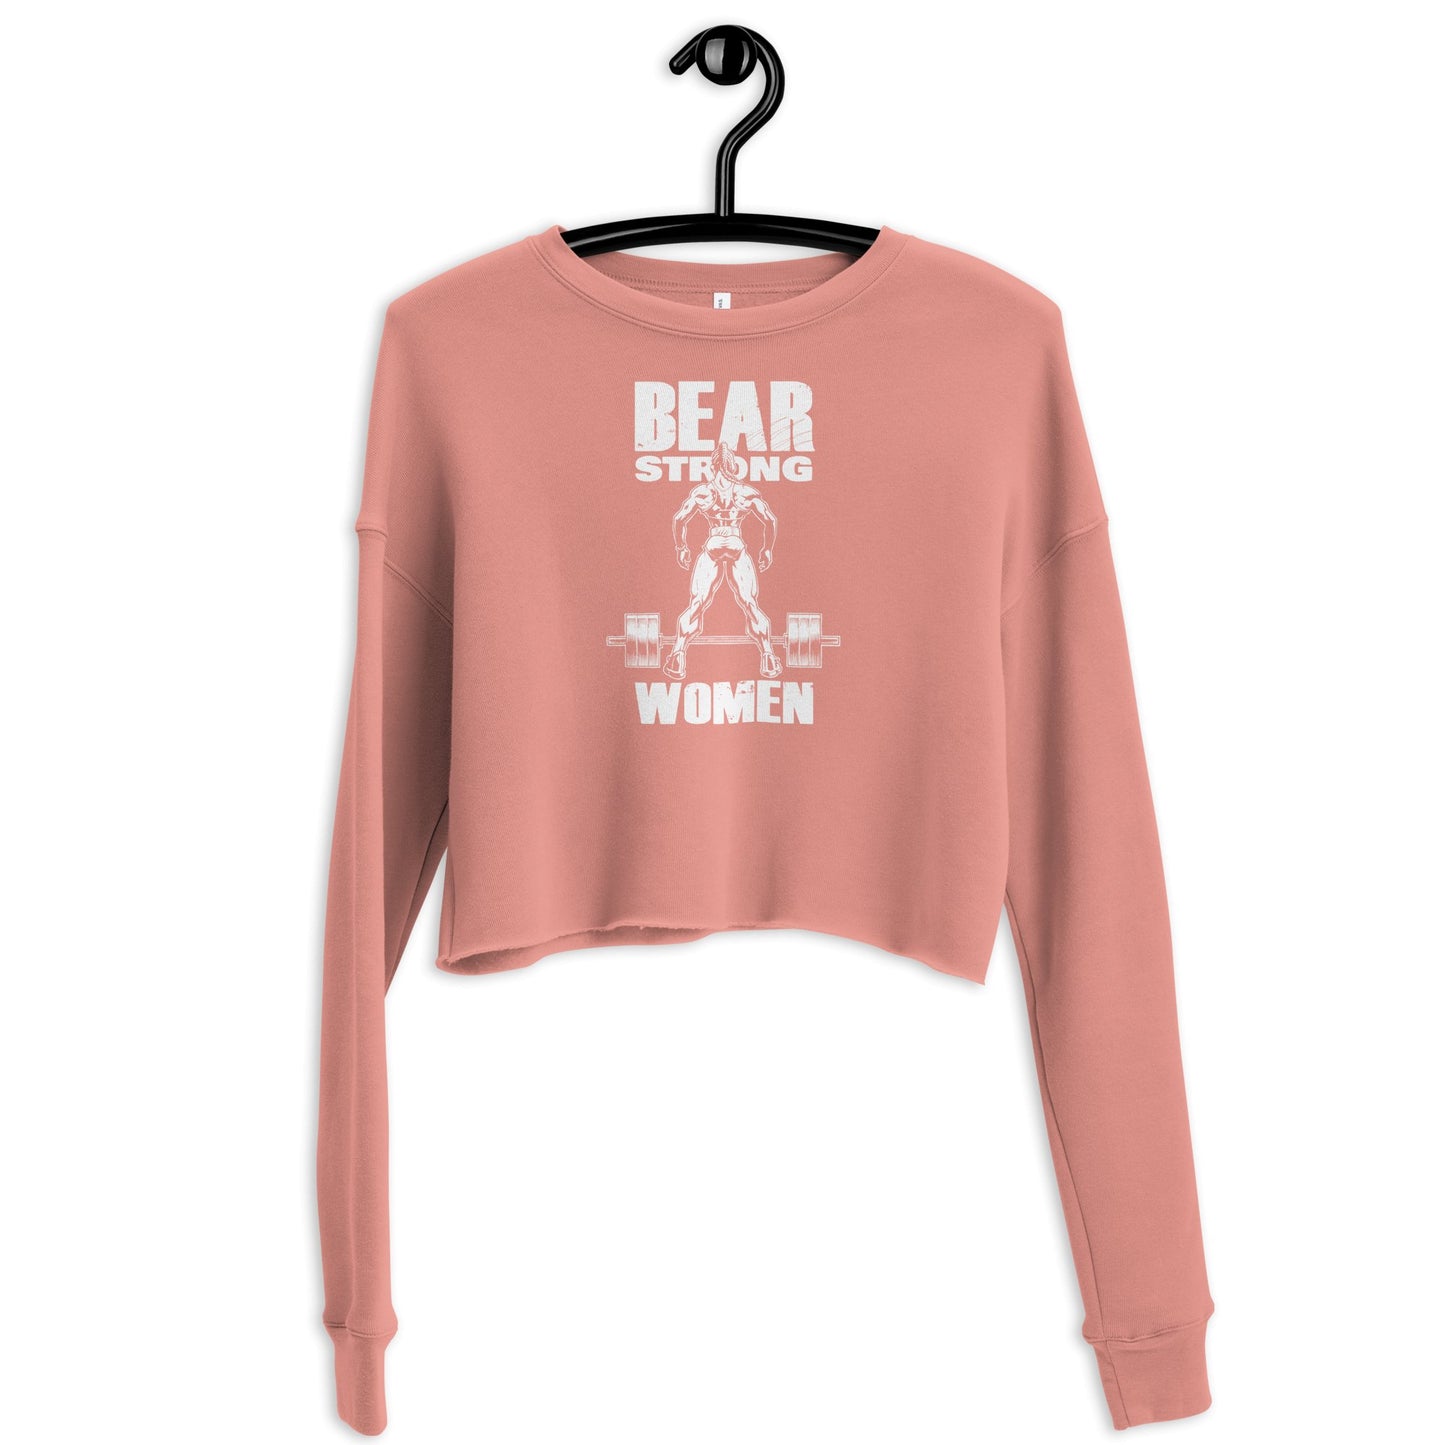 White Strong Women Print Crop Sweatshirt - Bearclothing